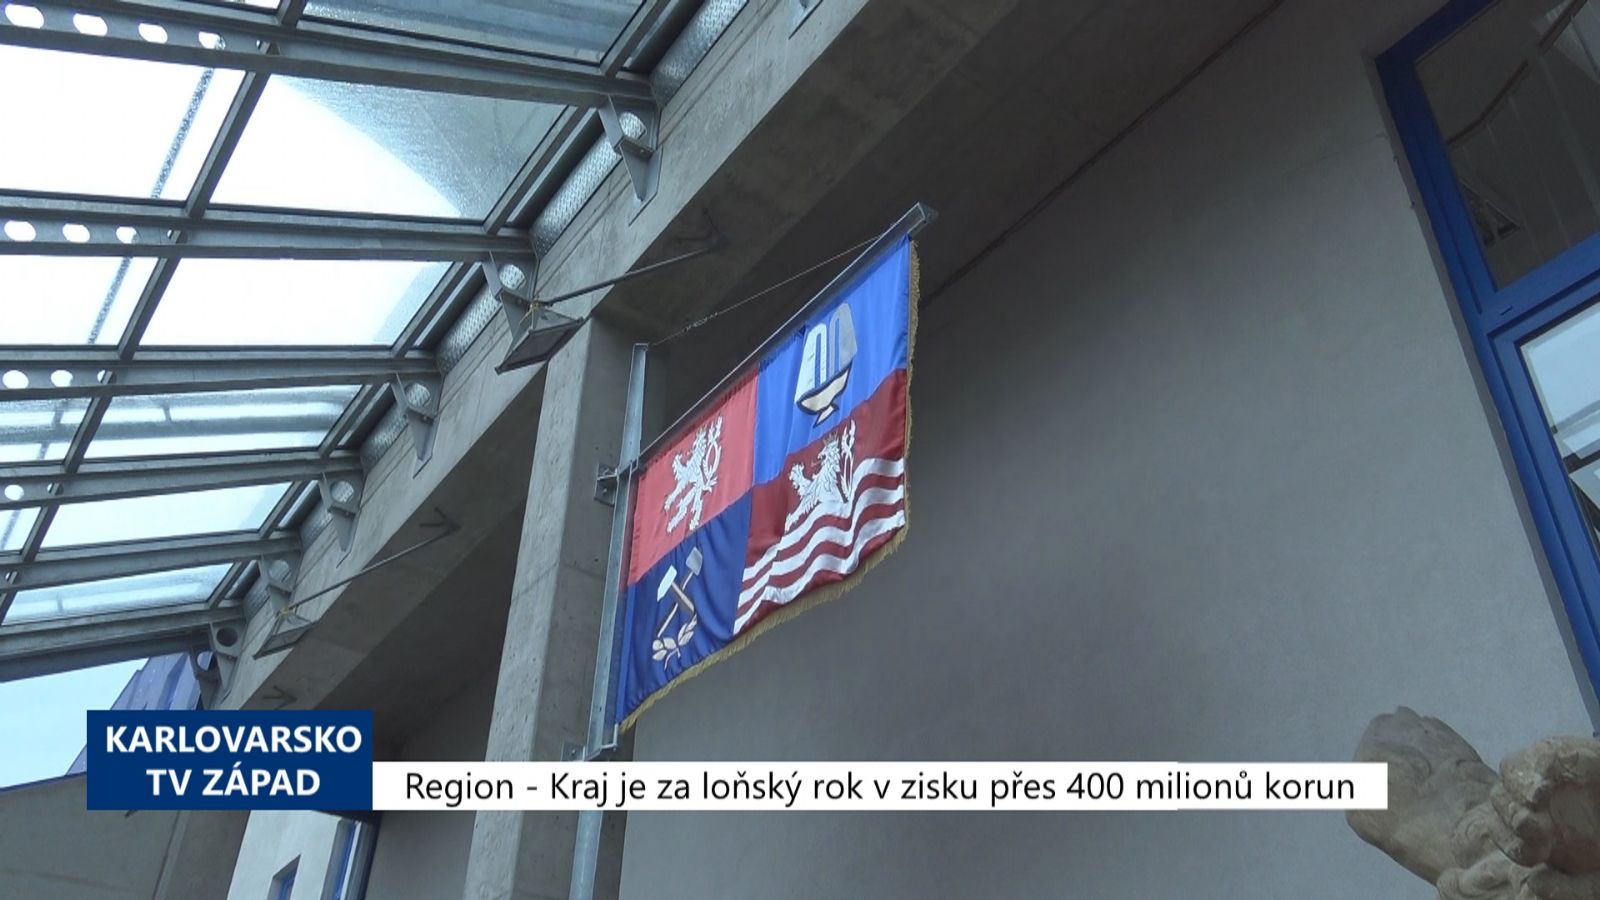 Region: Kraj je za loňský rok v zisku přes 400 milionů korun (TV Západ)